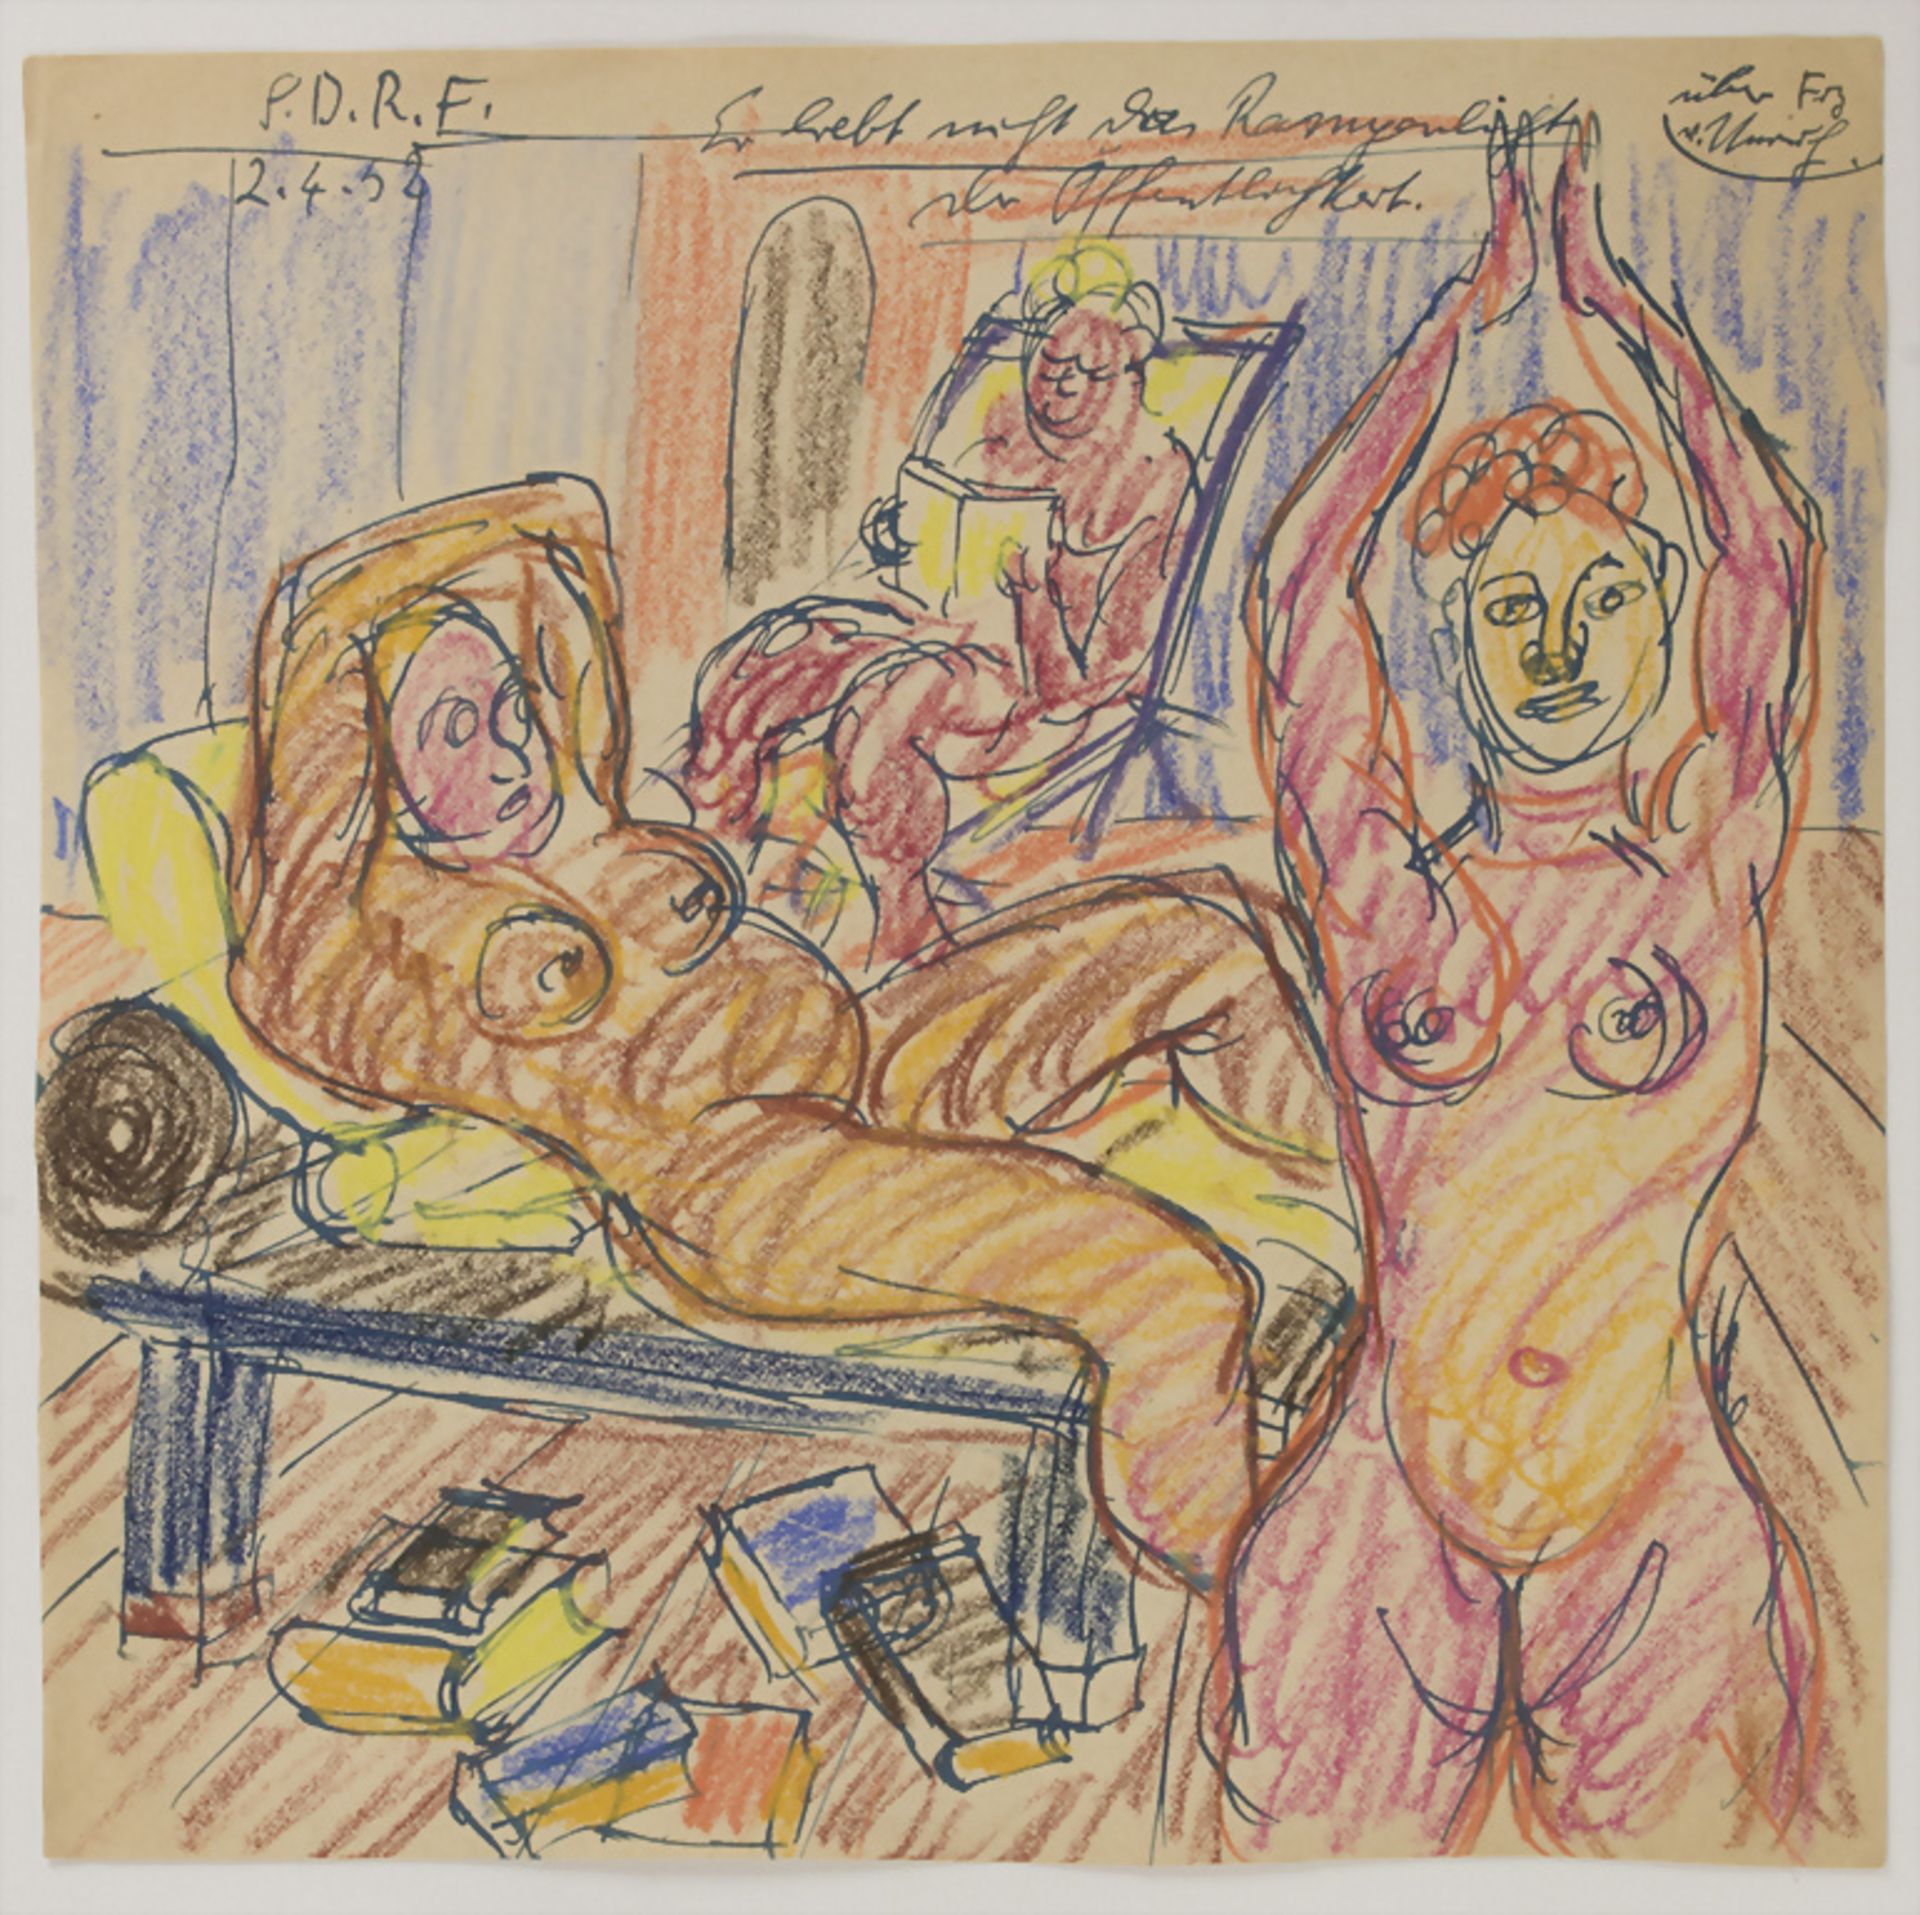 Gustav Schopf (1899-1986 Gerlingen), 'Personen im Zimmer' / People in a room